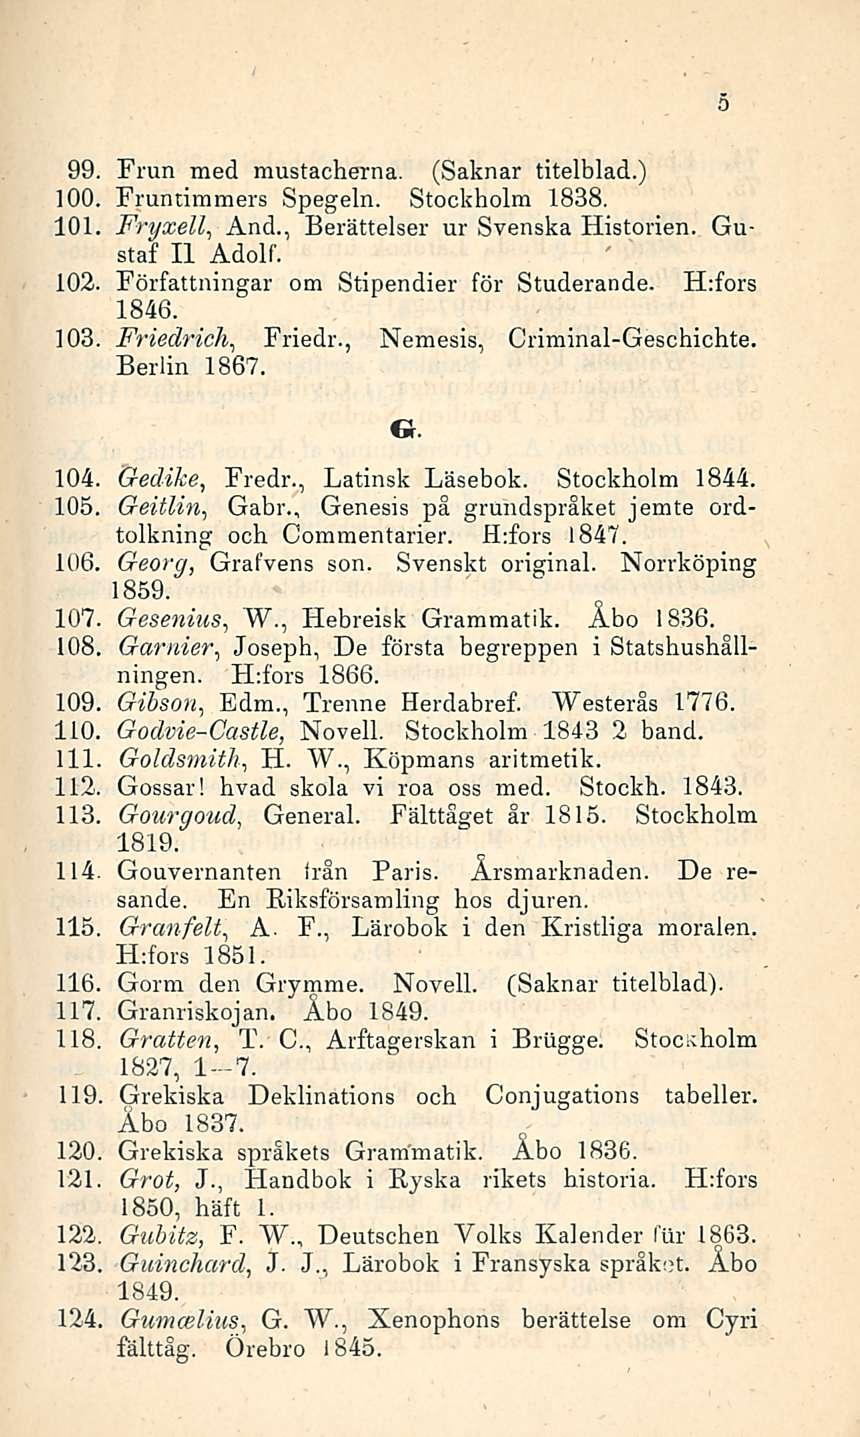 99. Frun med mustacherna. (Saknar titelblad.) 100. Fruntimmers Spegeln. Stockholm 1838. 101. Fryxell, And., Berättelser ur Svenska Historien. Gustaf Il Adolf. 102.